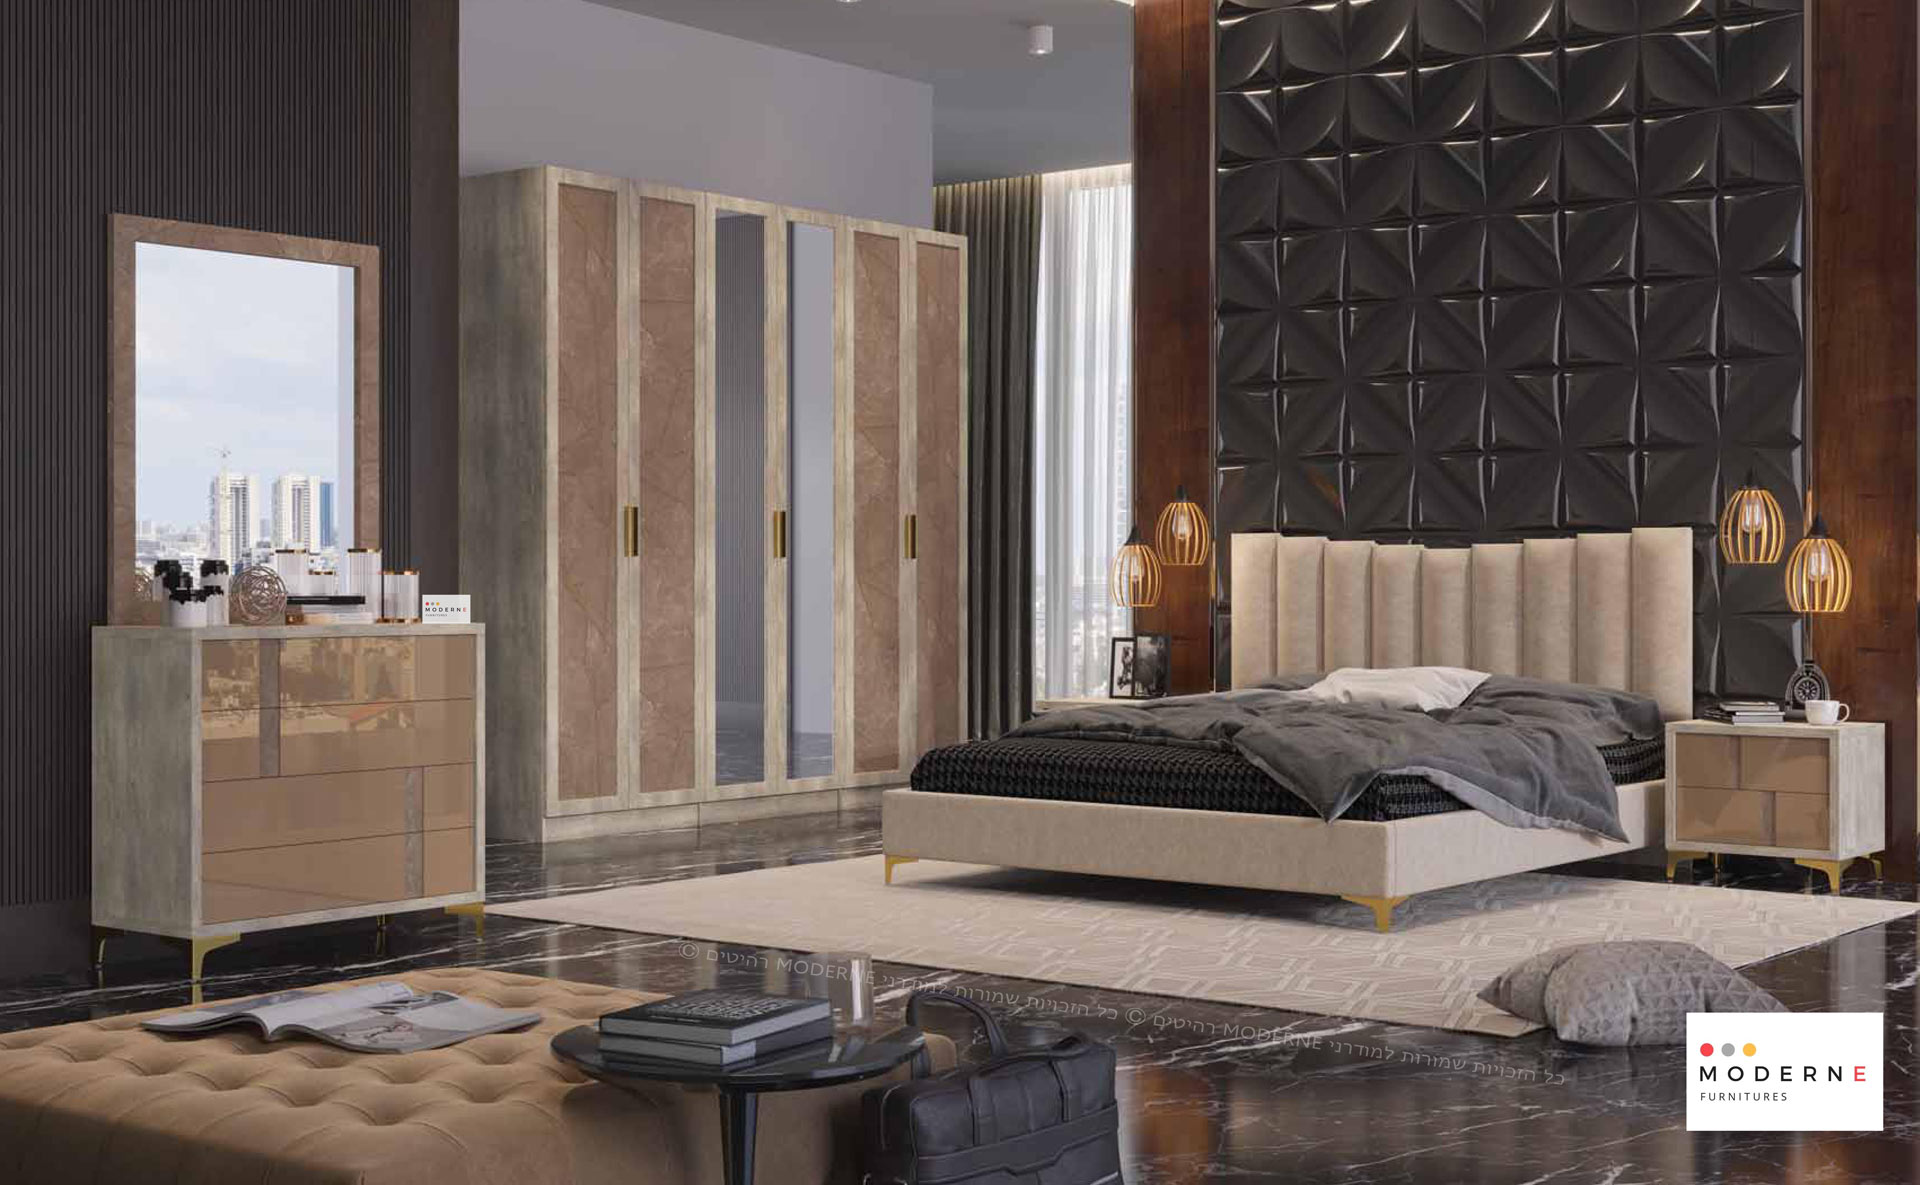 חדר שינה קומפלט דגם ברצלונה ראש המיטה בשילוב כריות מרופדות ,החדר בצבע אפור בהיר בשילוב חום עם רגלי מתכת זהב ,נמצא באתר מודרני moderne.co.il